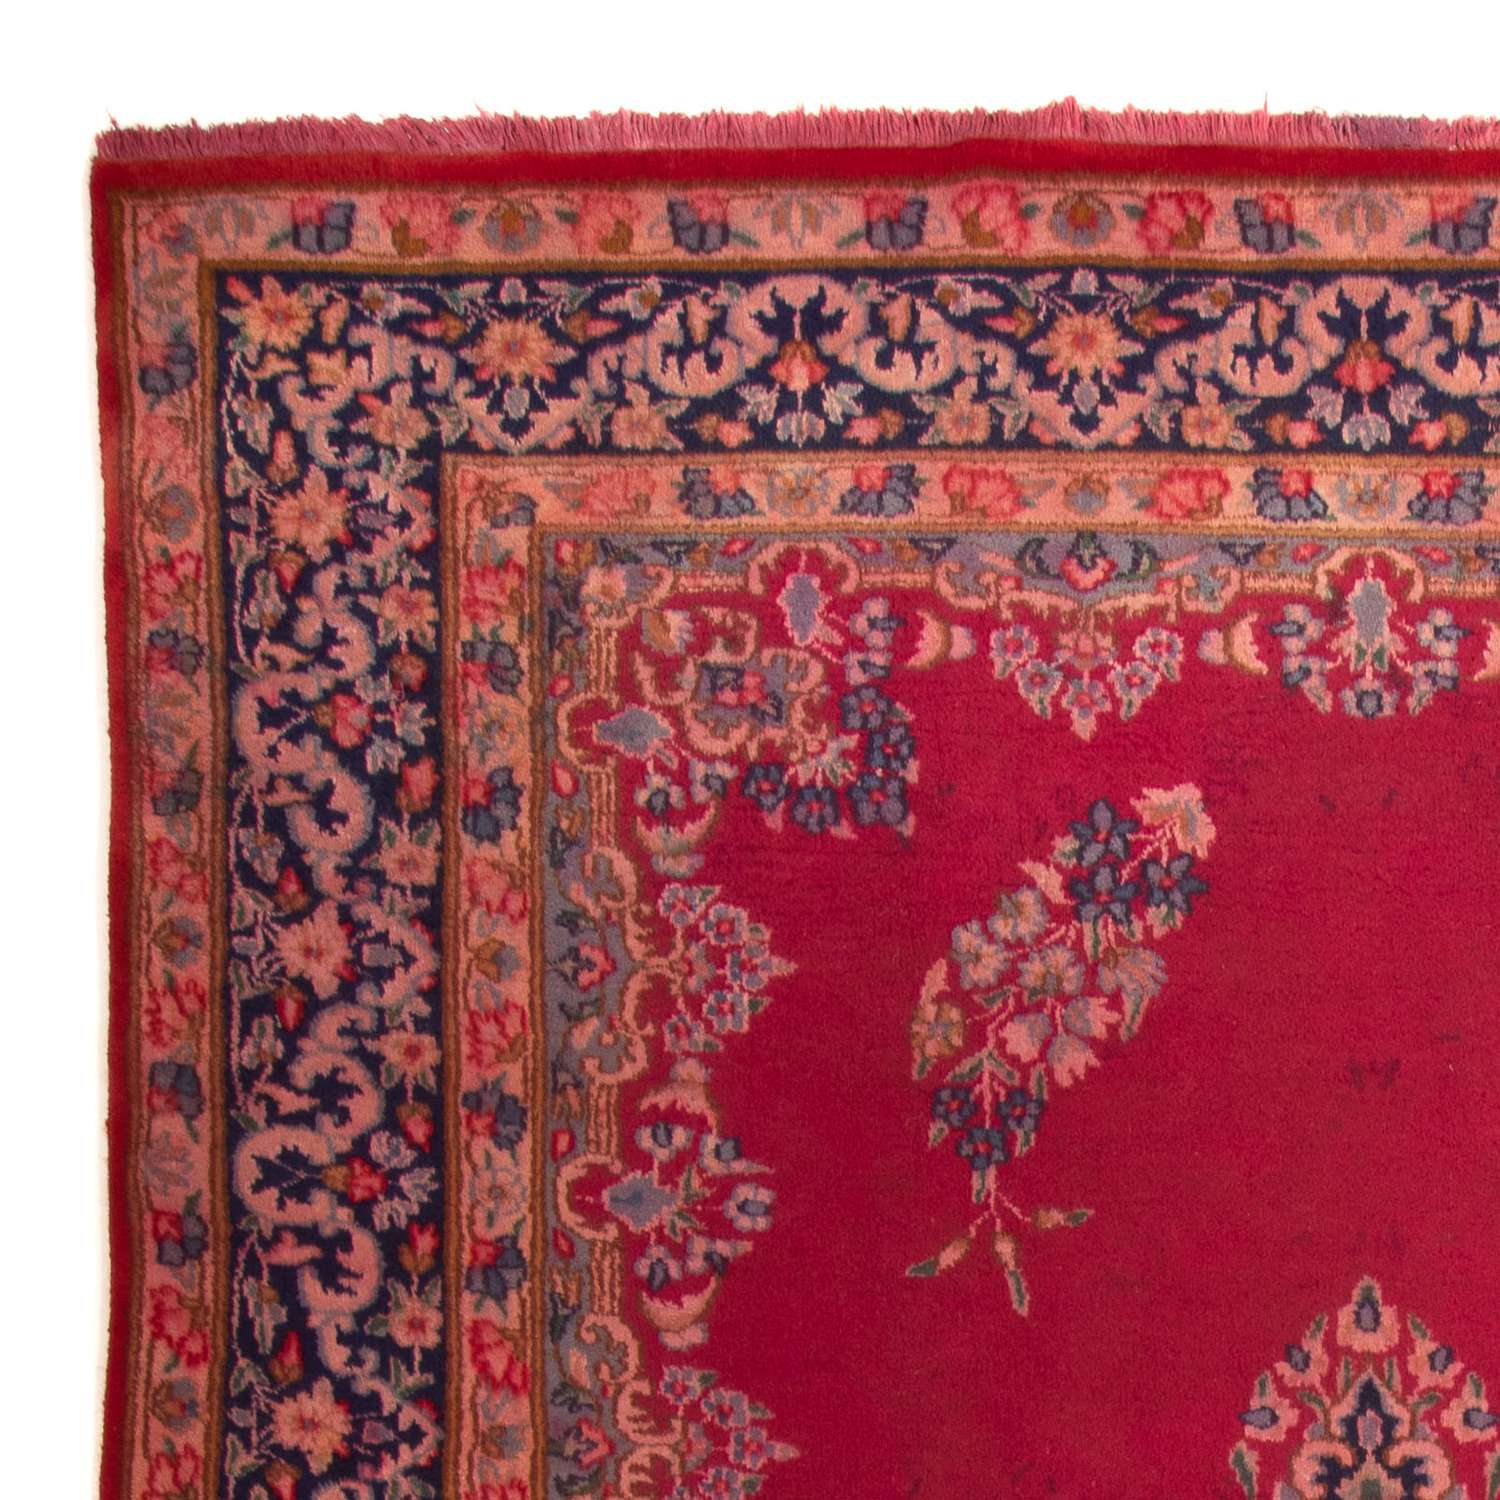 Dywan perski - Klasyczny - 330 x 235 cm - czerwony